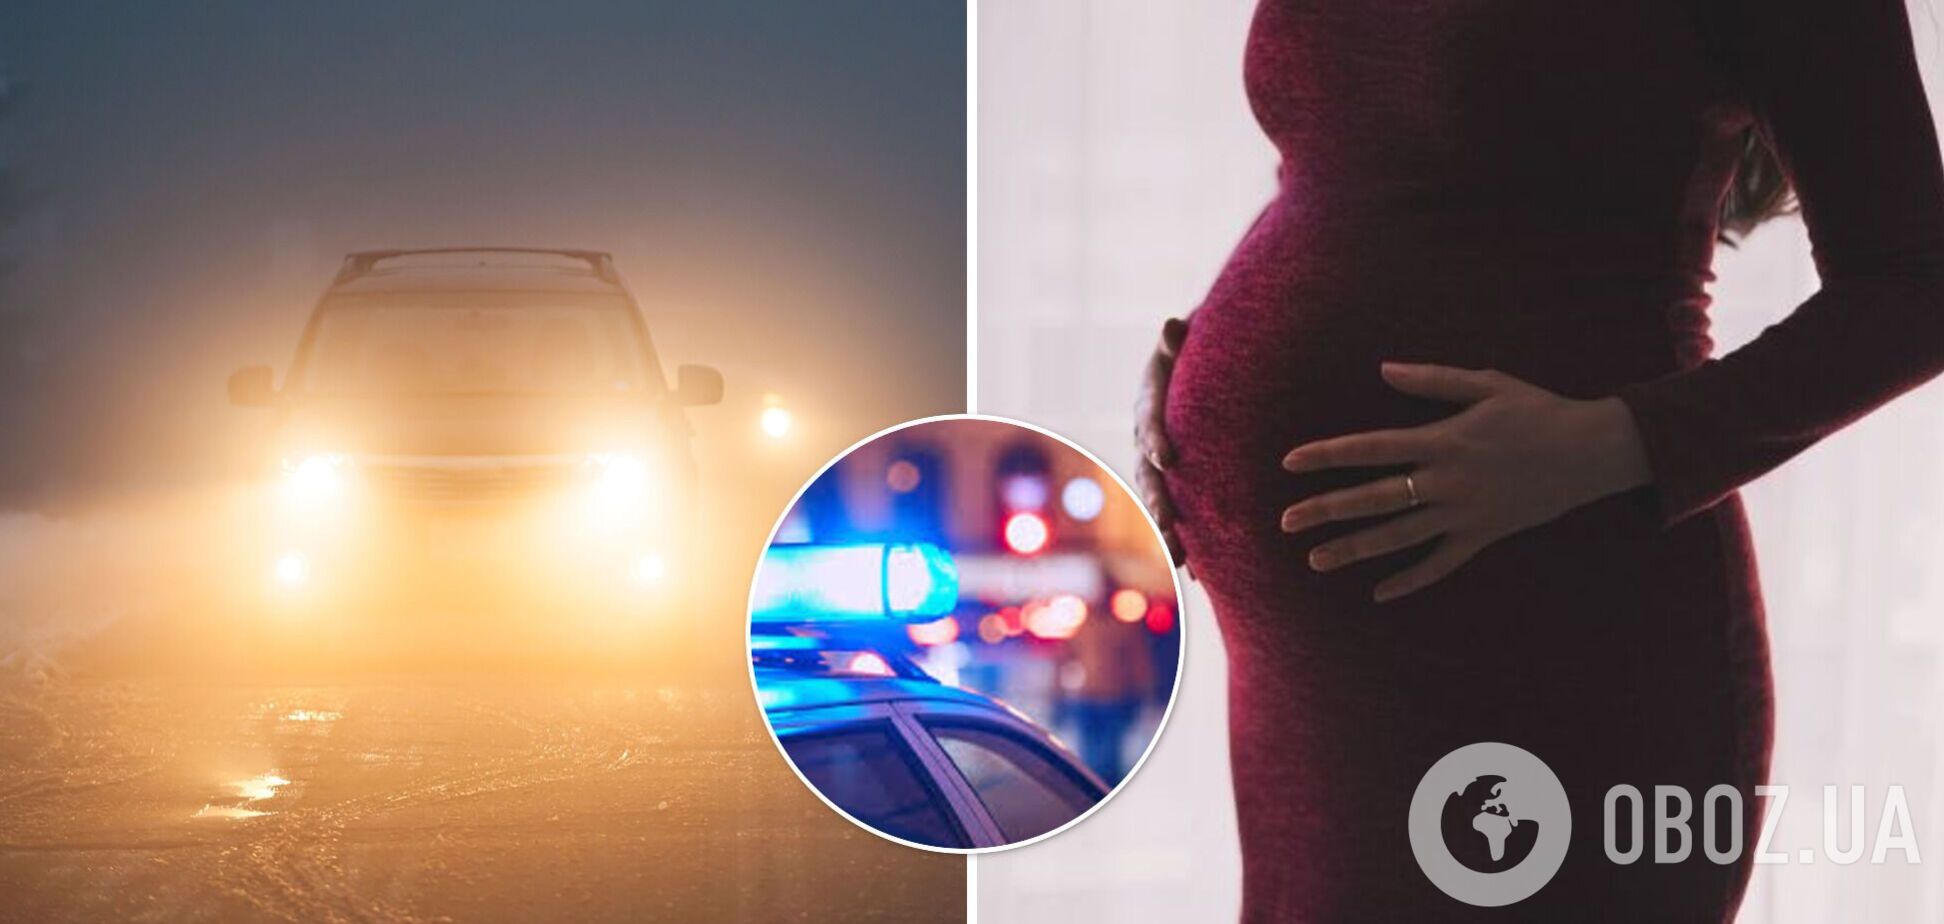 У Чернівецькій області водій авто збив вагітну і втік з місця аварії